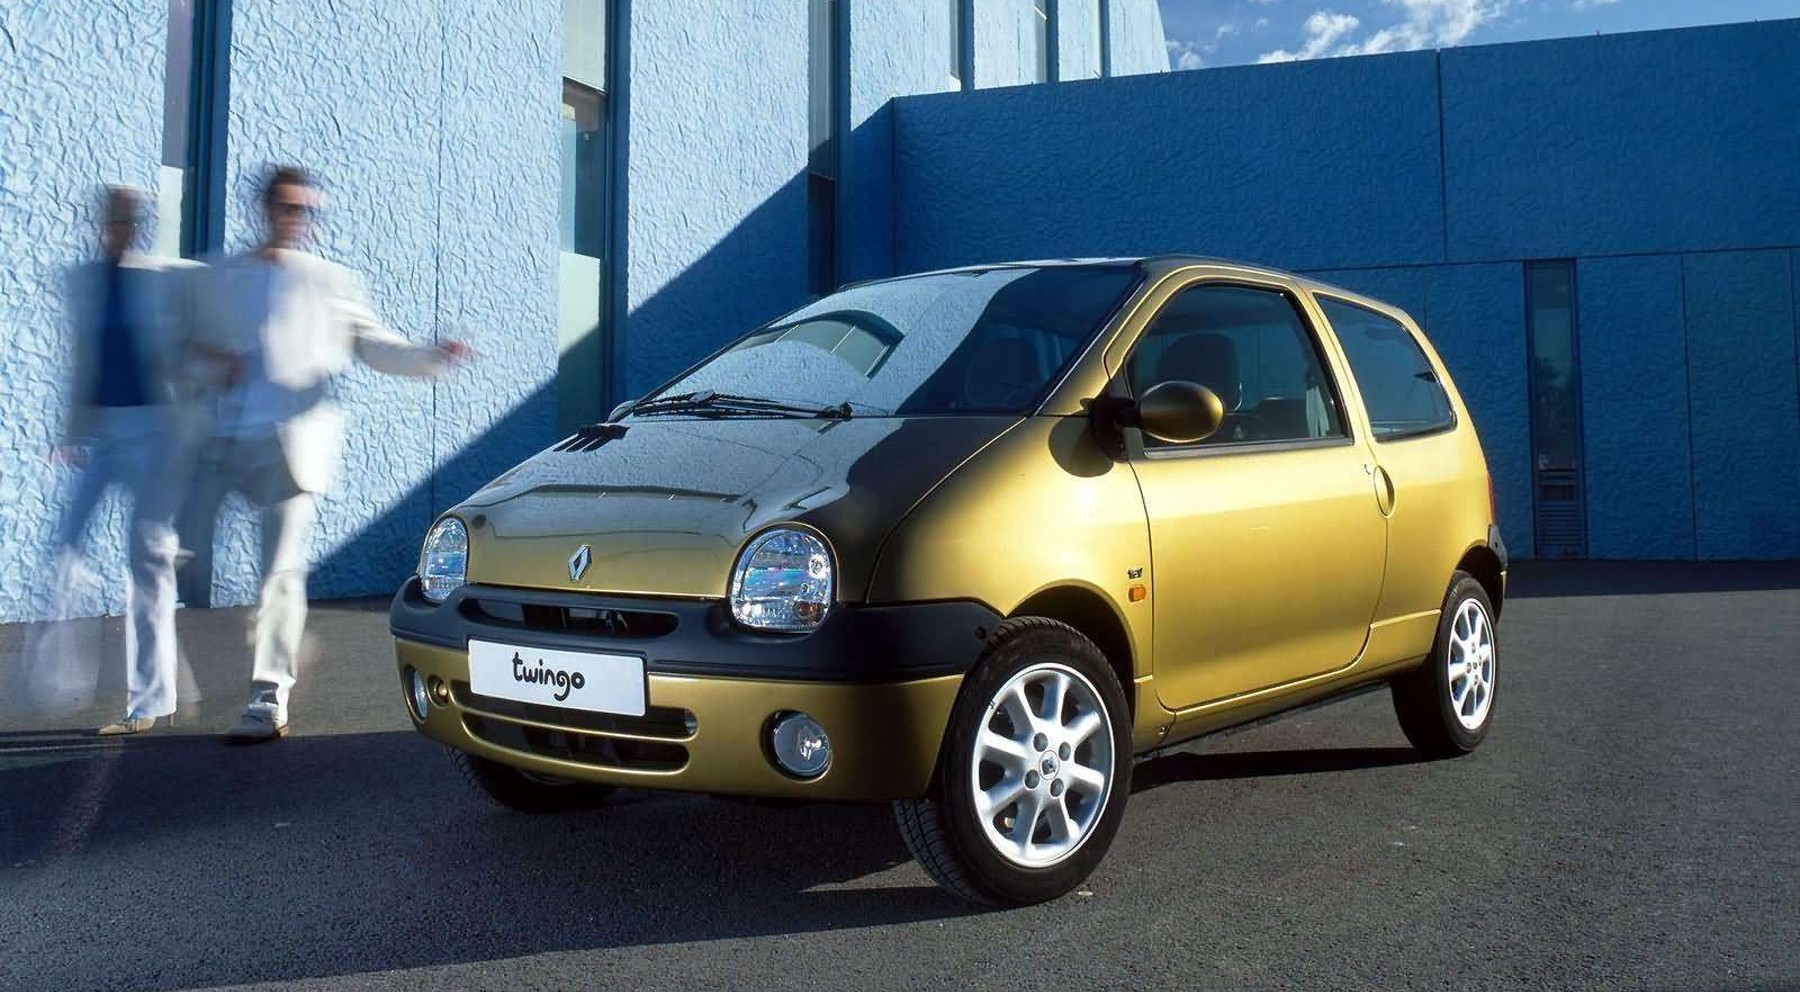 Vuelve el Renault Twingo con el diseño de los años 90'?